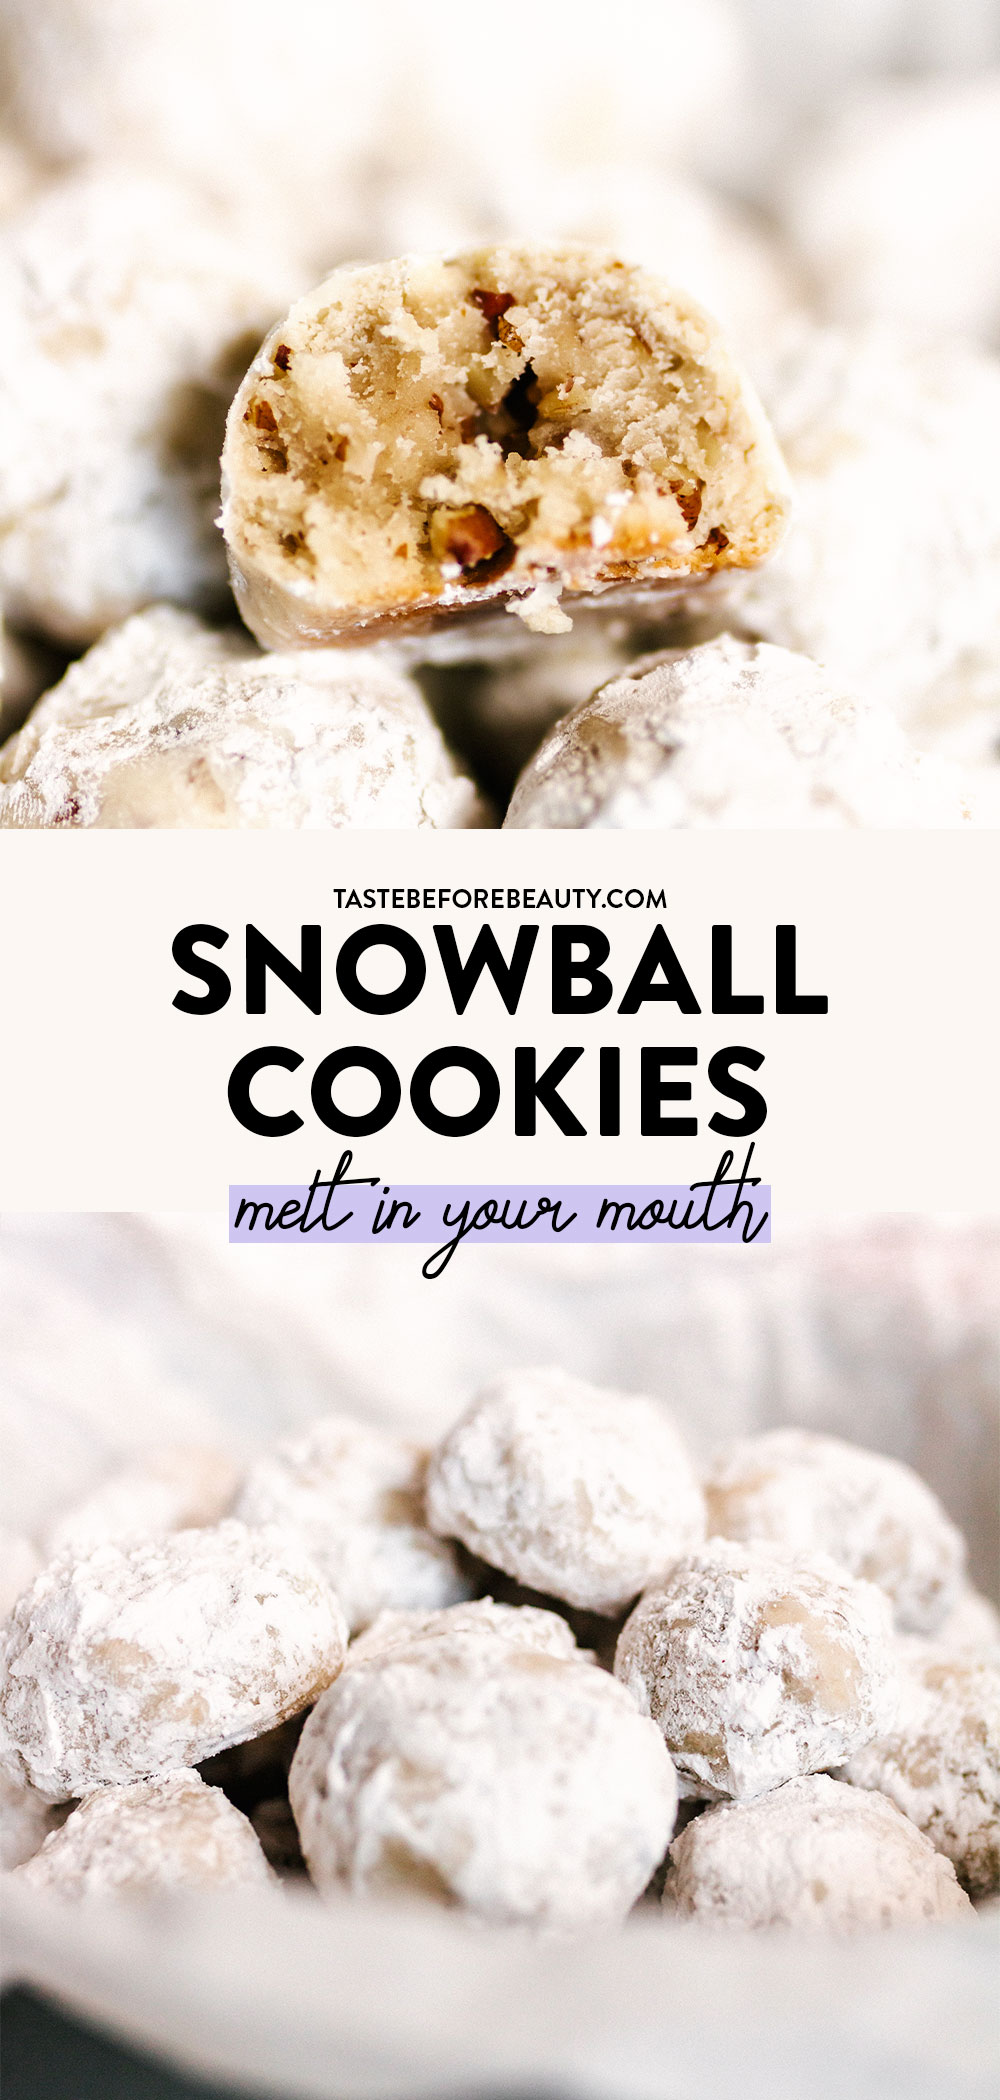 snowball cookies pinterest pin